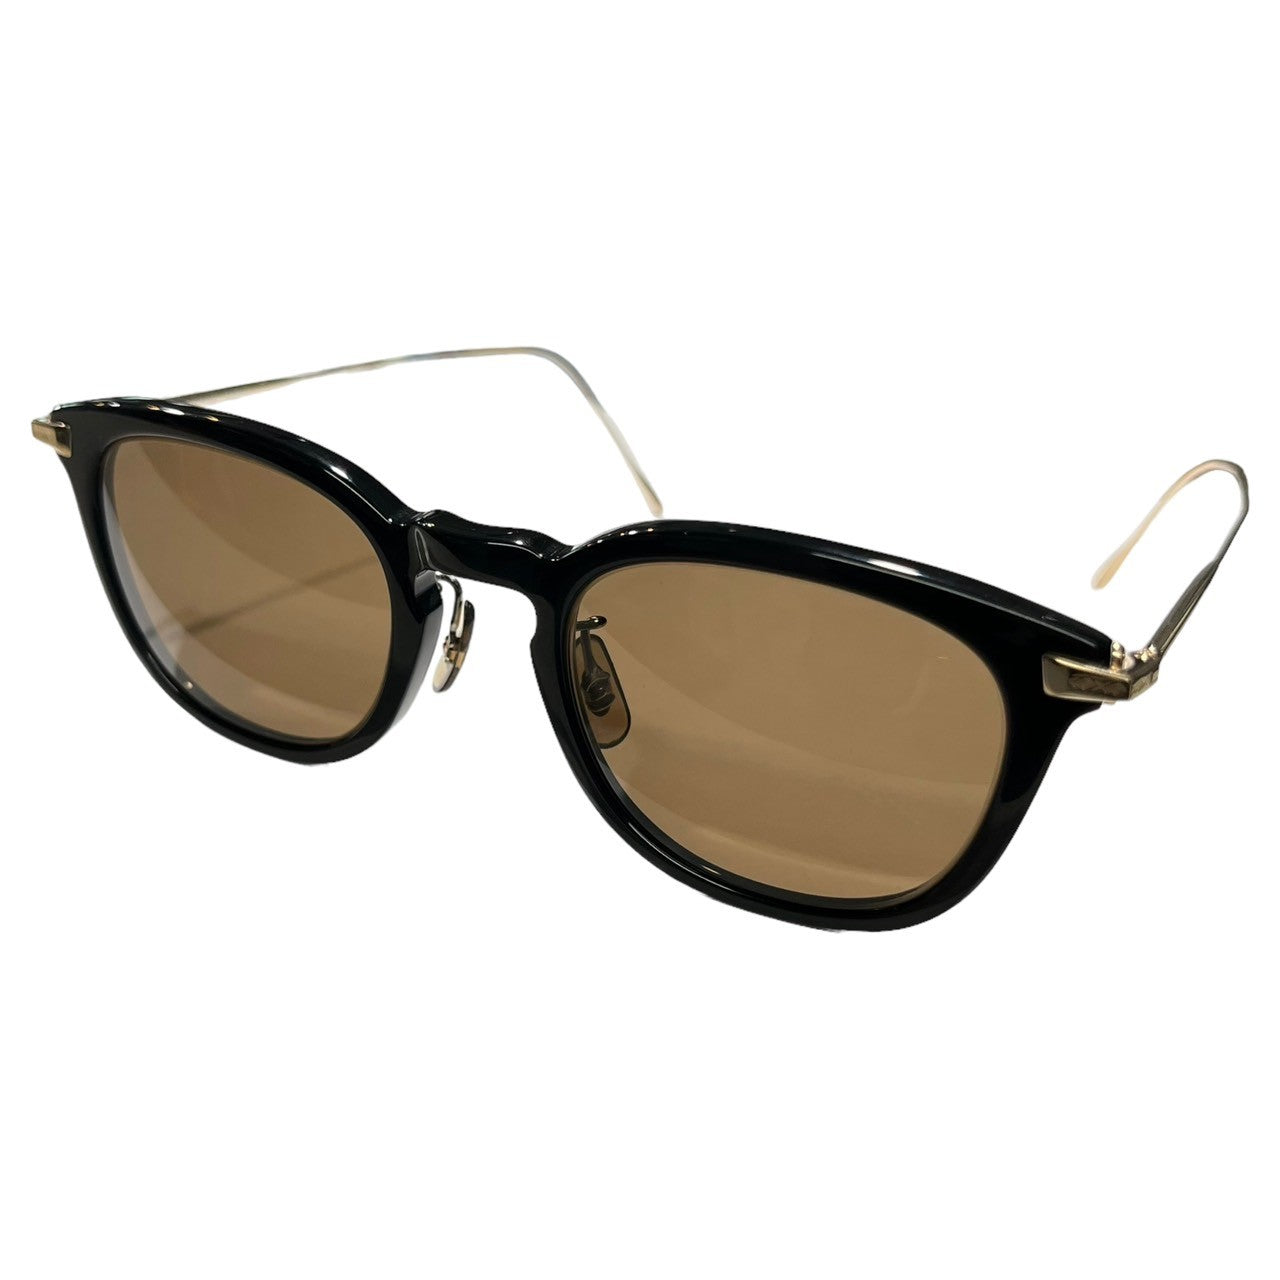 OLIVER PEOPLES(オリバーピープルズ) Corrington メタル セル サングラス 48□22-145 ブラック 眼鏡 メガネ